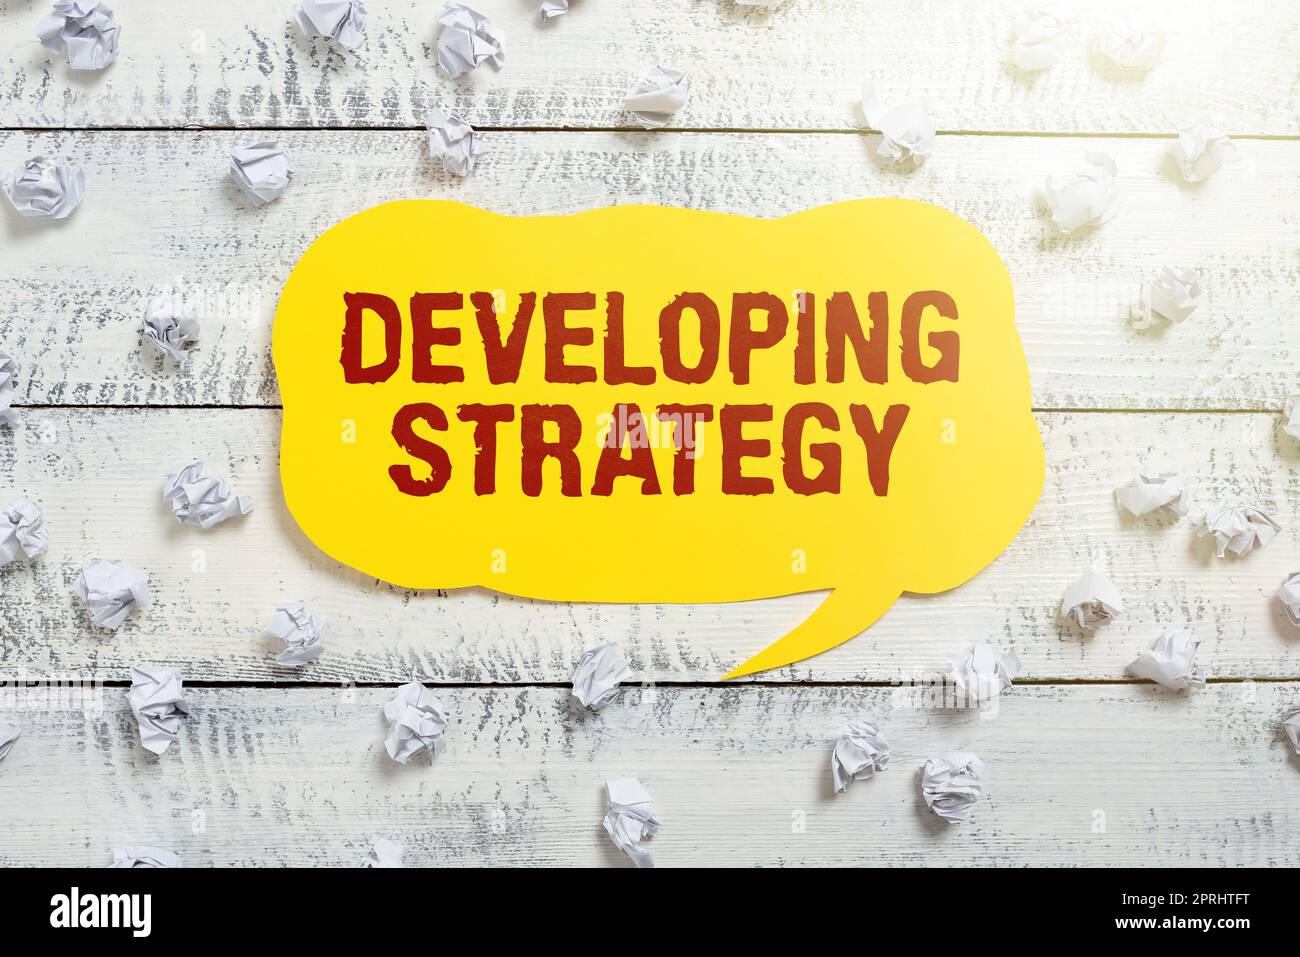 Visualizzazione concettuale sviluppo di strategyOrganizzazioni modifiche del processo per raggiungere gli obiettivi. Le organizzazioni dei concept aziendali elaborano le modifiche per raggiungere gli obiettivi Foto Stock